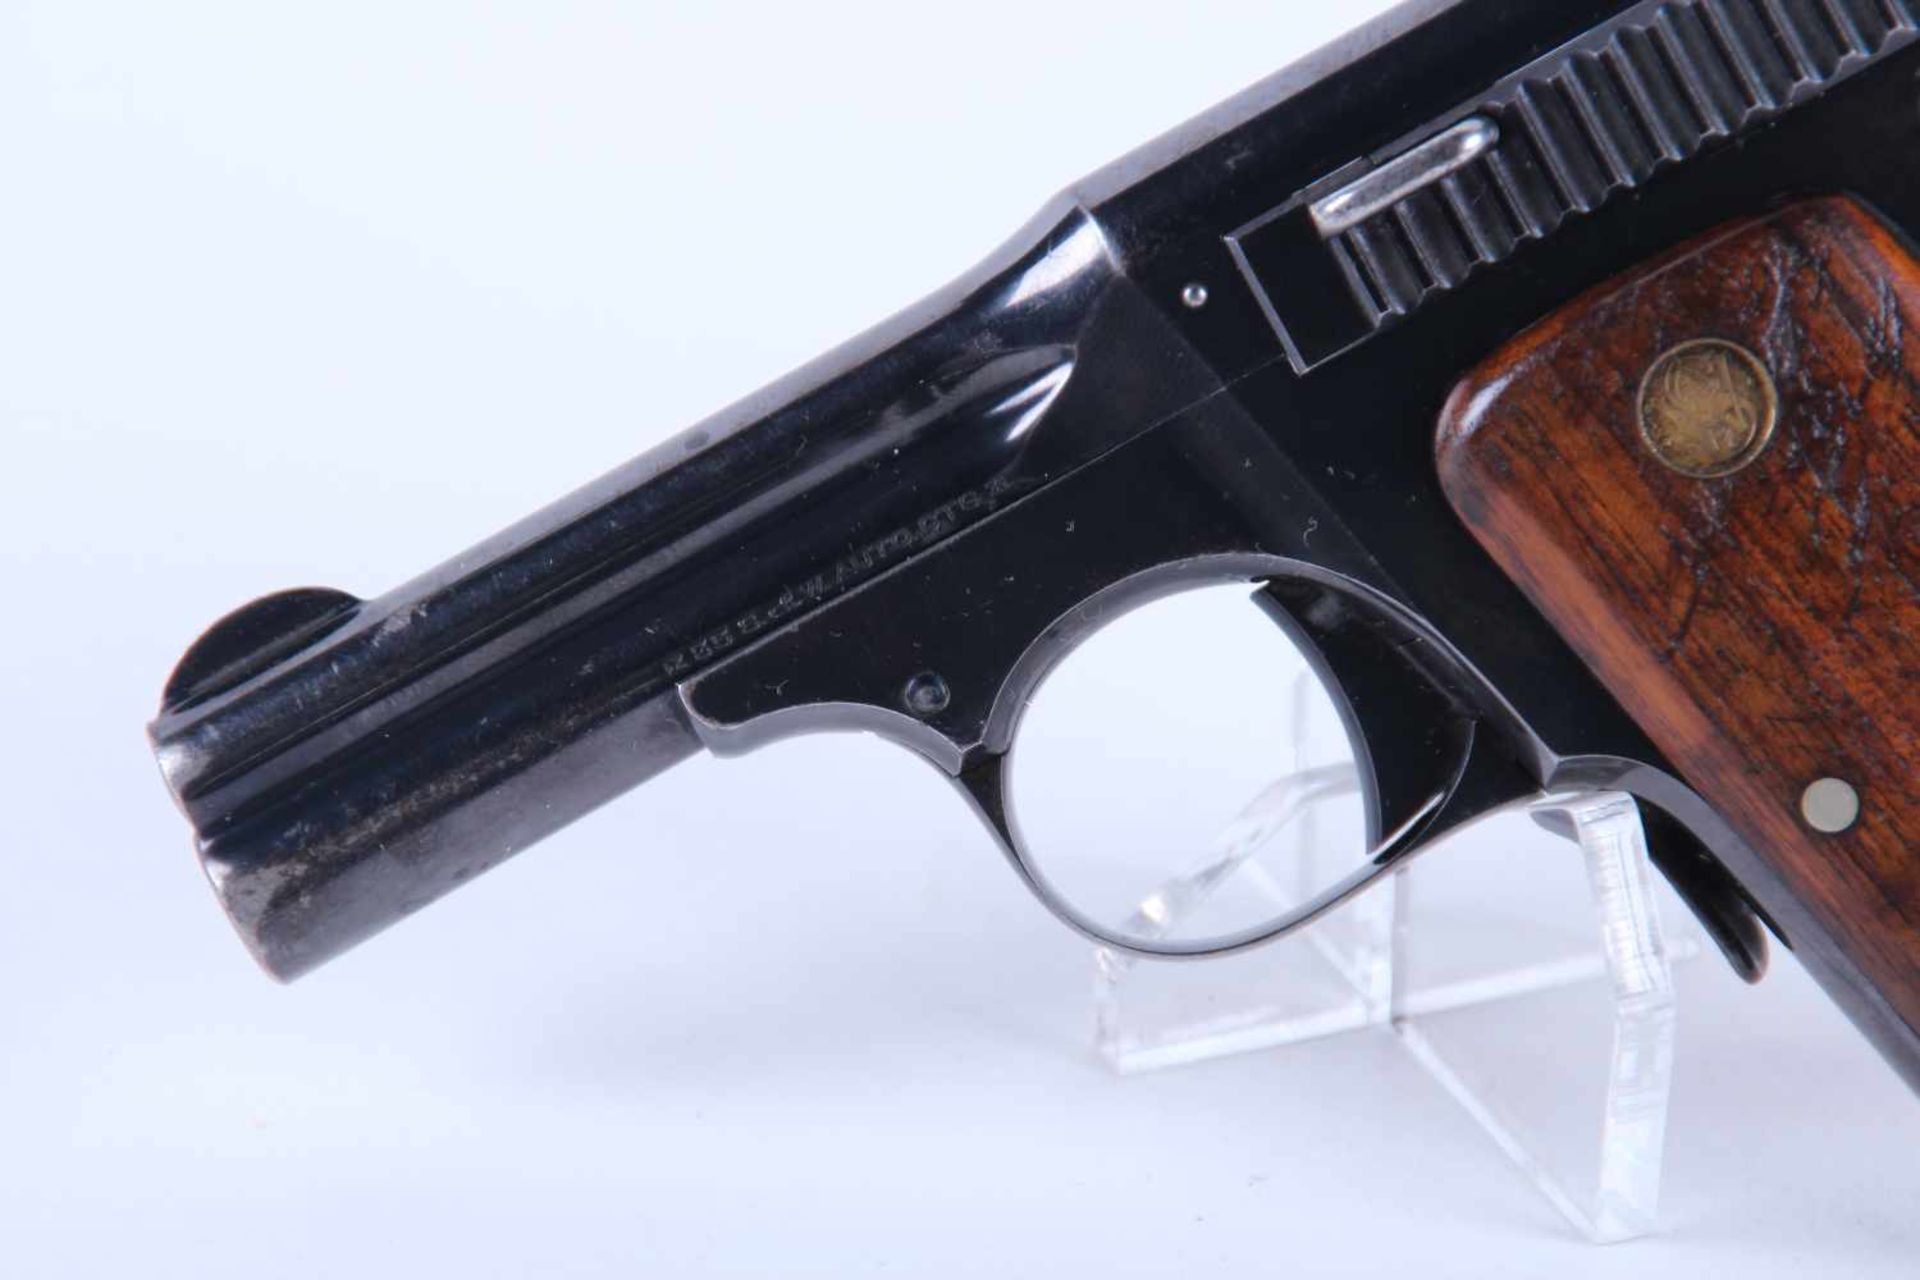 Pistolet Smith & Wesson Mod 35 Catégorie B. Calibre 32 Smith & Wesson. Plaquette en bois, chargeur - Bild 2 aus 3